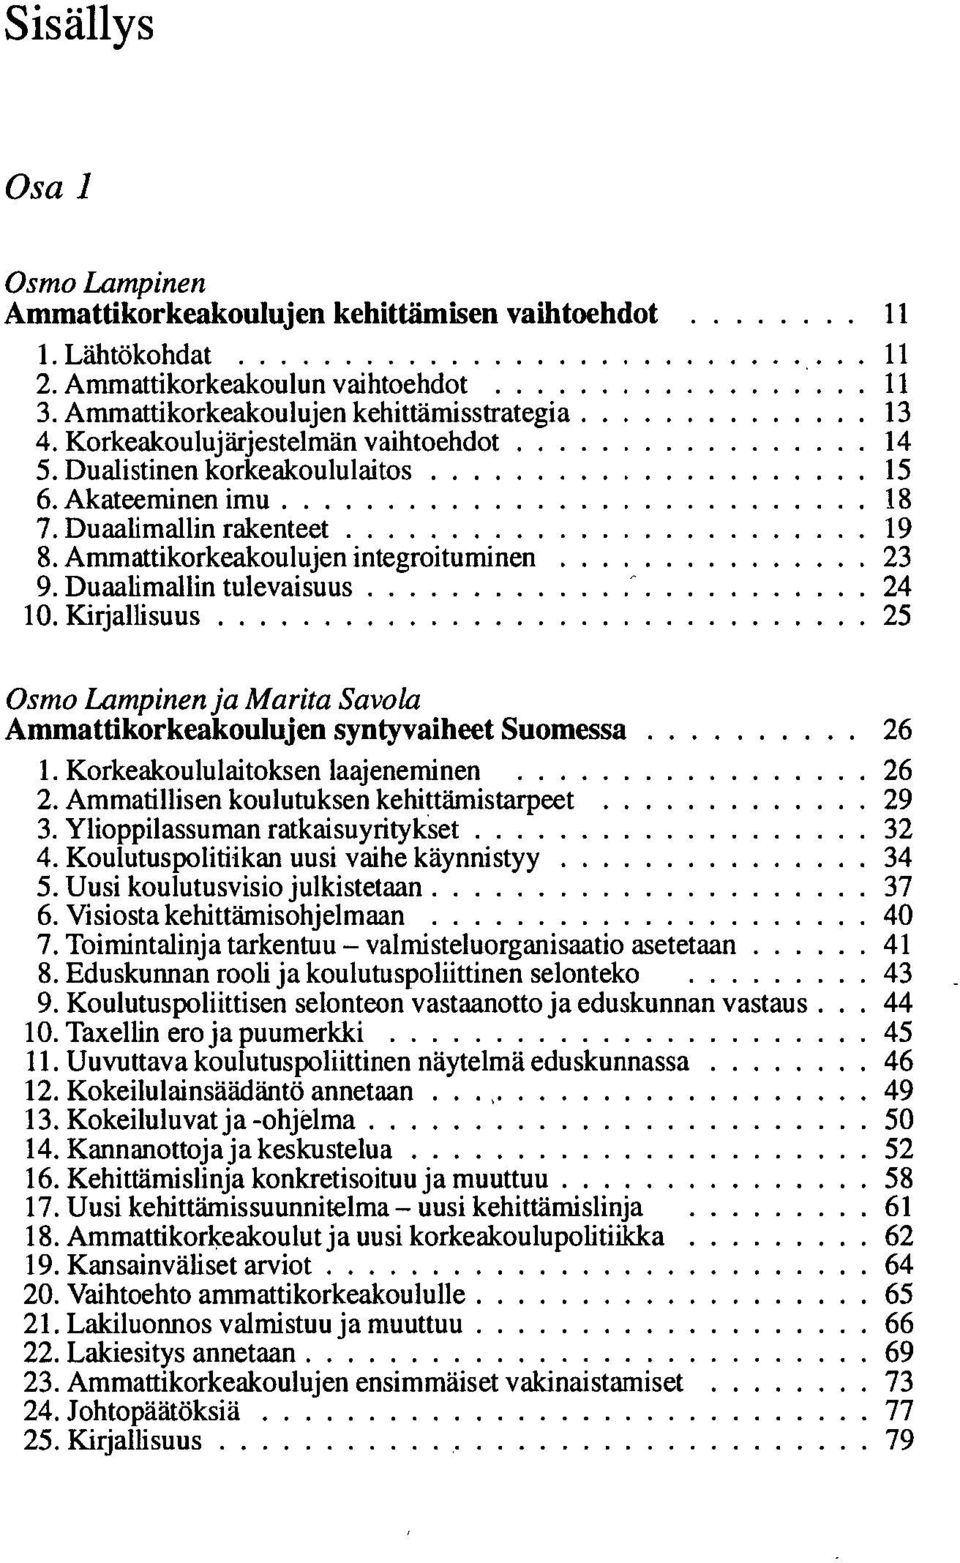 Duaalimallin tulevaisuus ' 24 10. Kirjallisuus 25 Osmo Lampinen ja Marita Savola Ammattikorkeakoulujen syntyvaiheet Suomessa 26 1. Korkeakoululaitoksen laajeneminen 26 2.